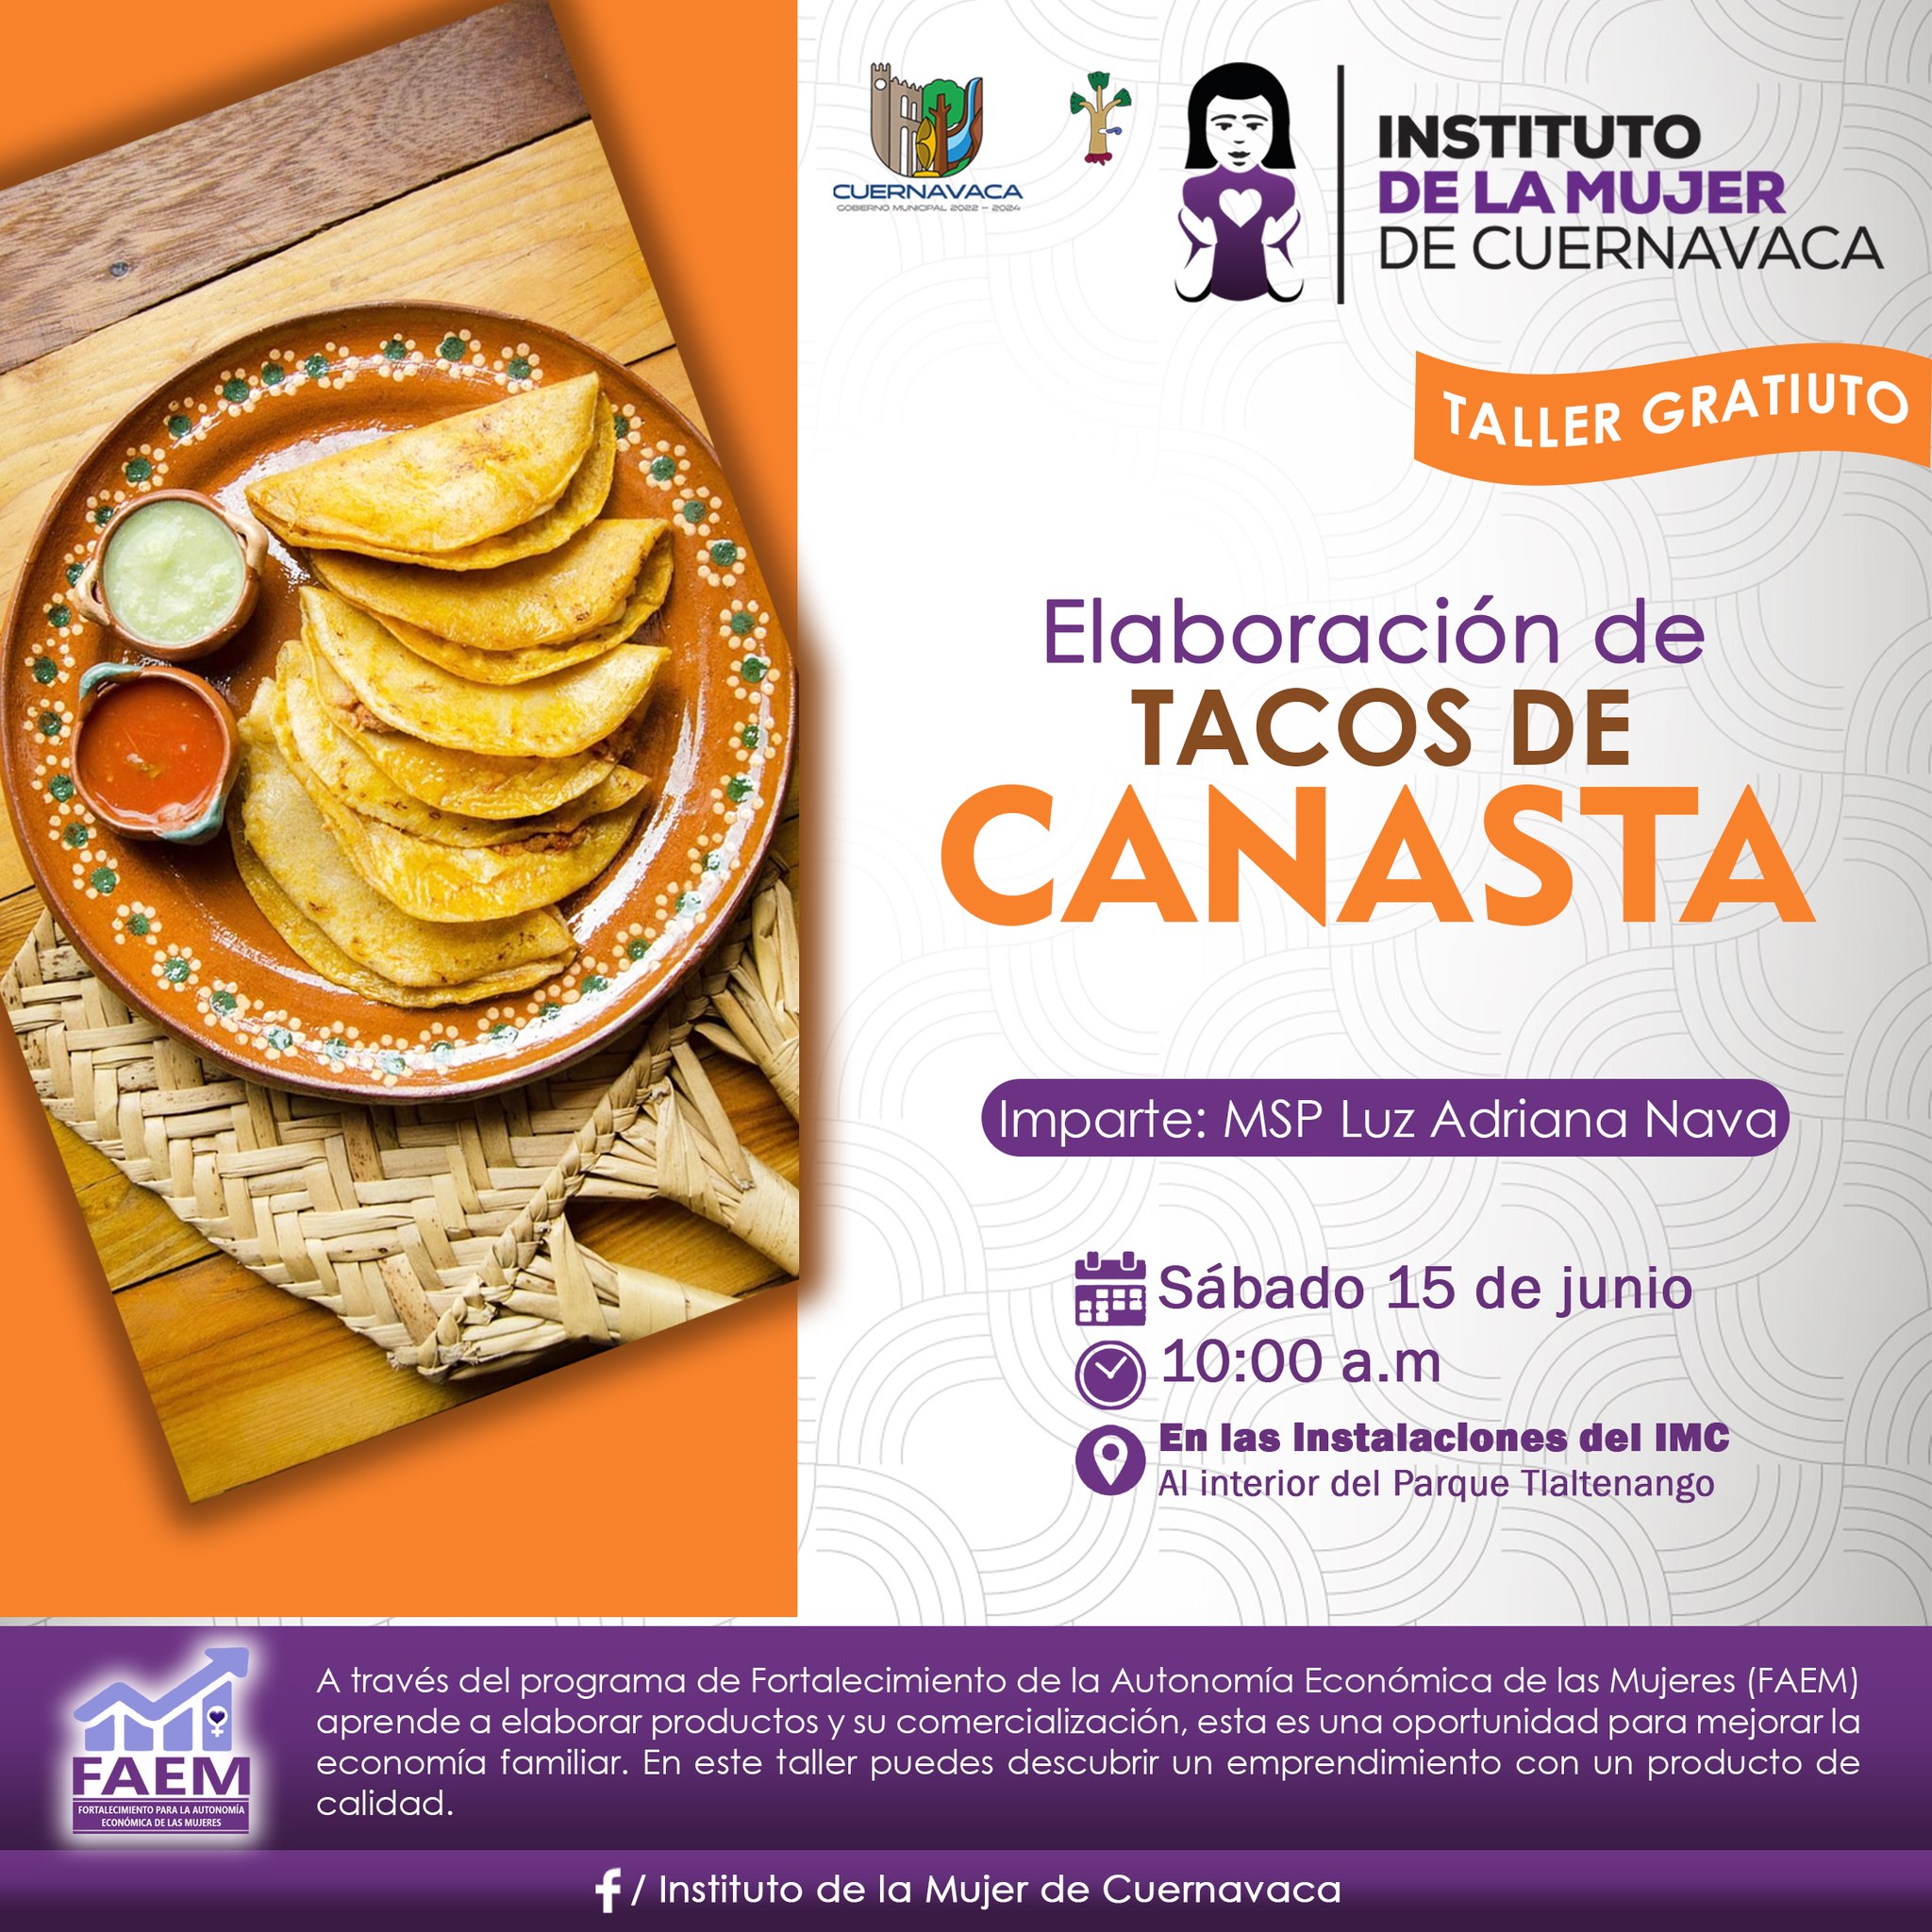 Elaboración de Tacos de Canasta en el Instituto de la Mujer de Cuernavaca.